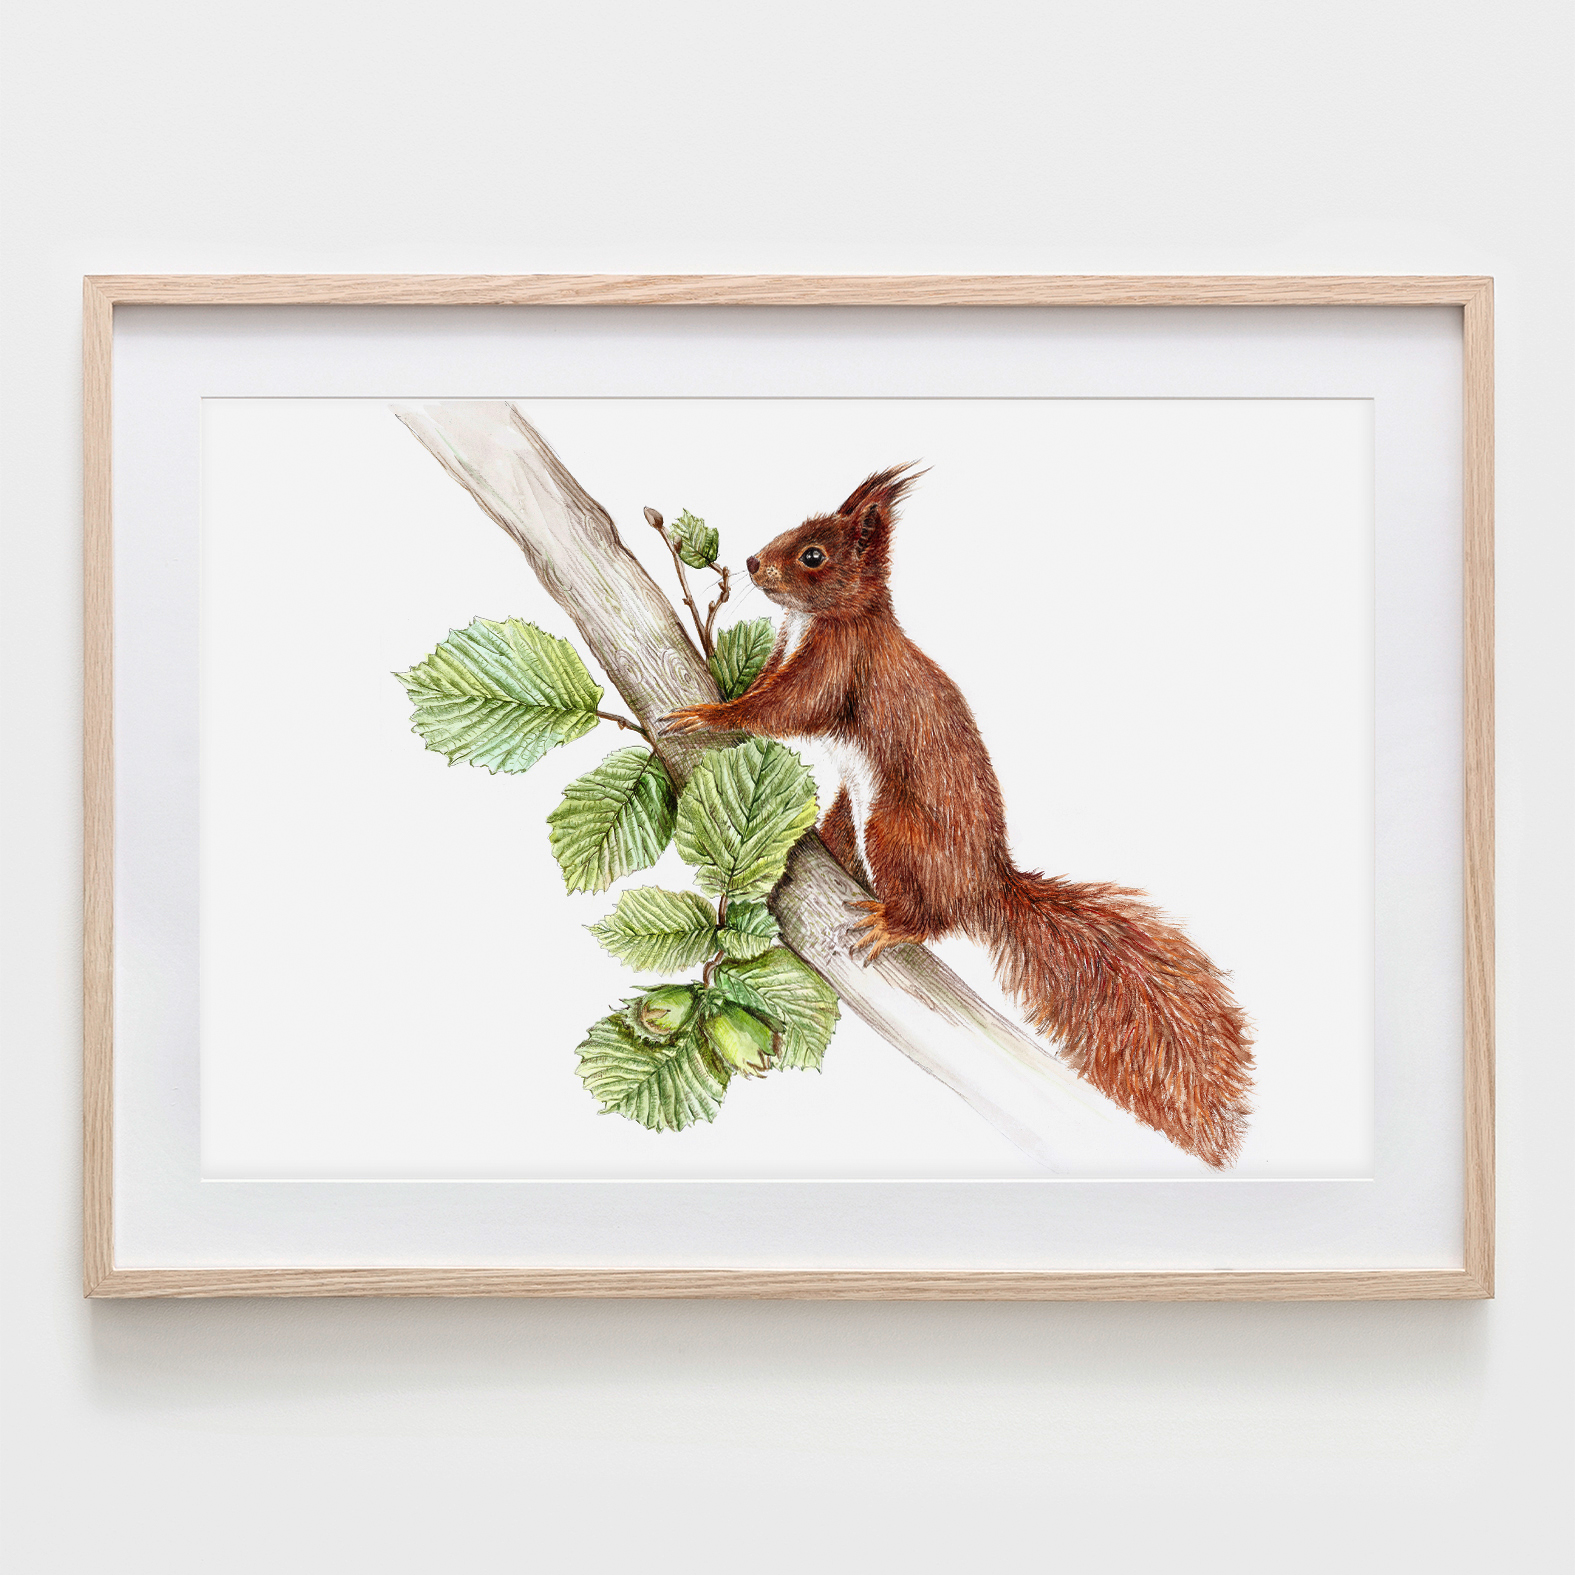 Eichhörnchen im Nussbaum Fine Art Print Giclée Print Poster Kunstdruck Zeichnung